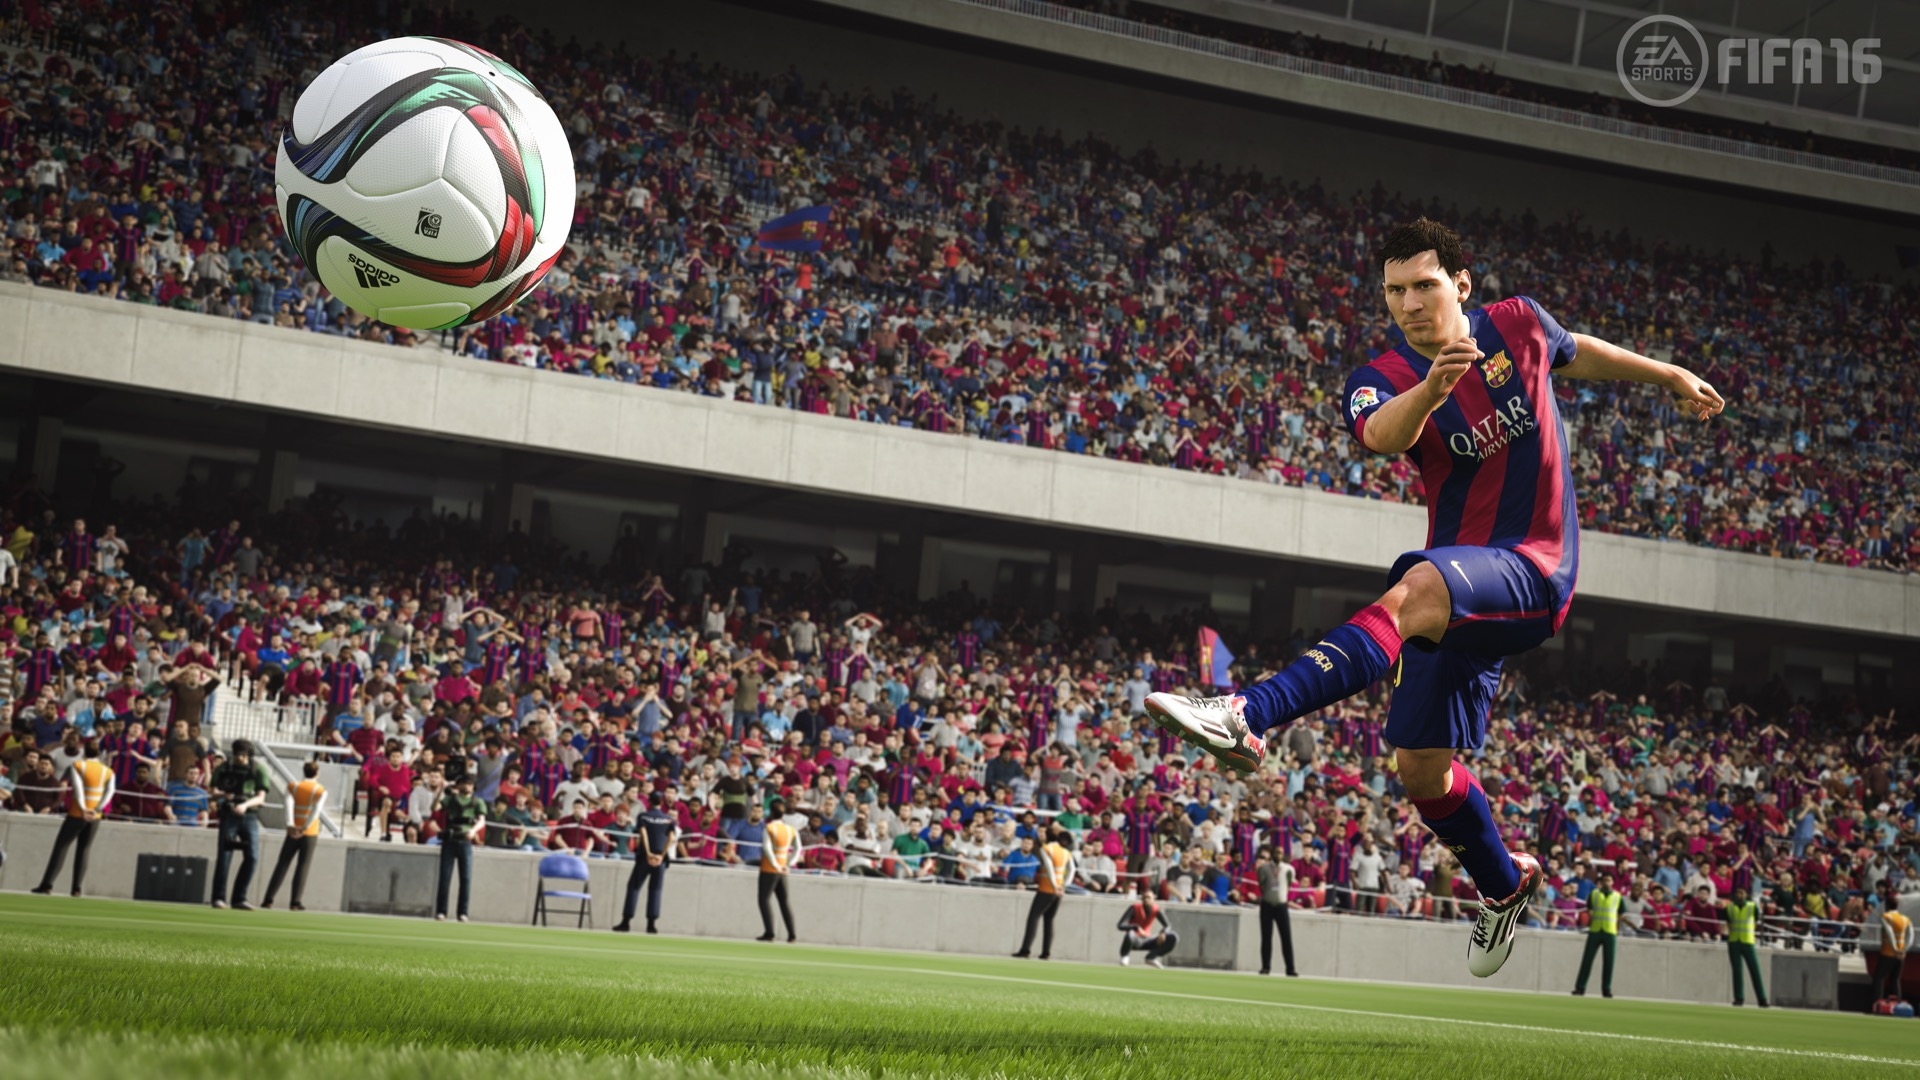 Скриншот из игры FIFA 16 под номером 21